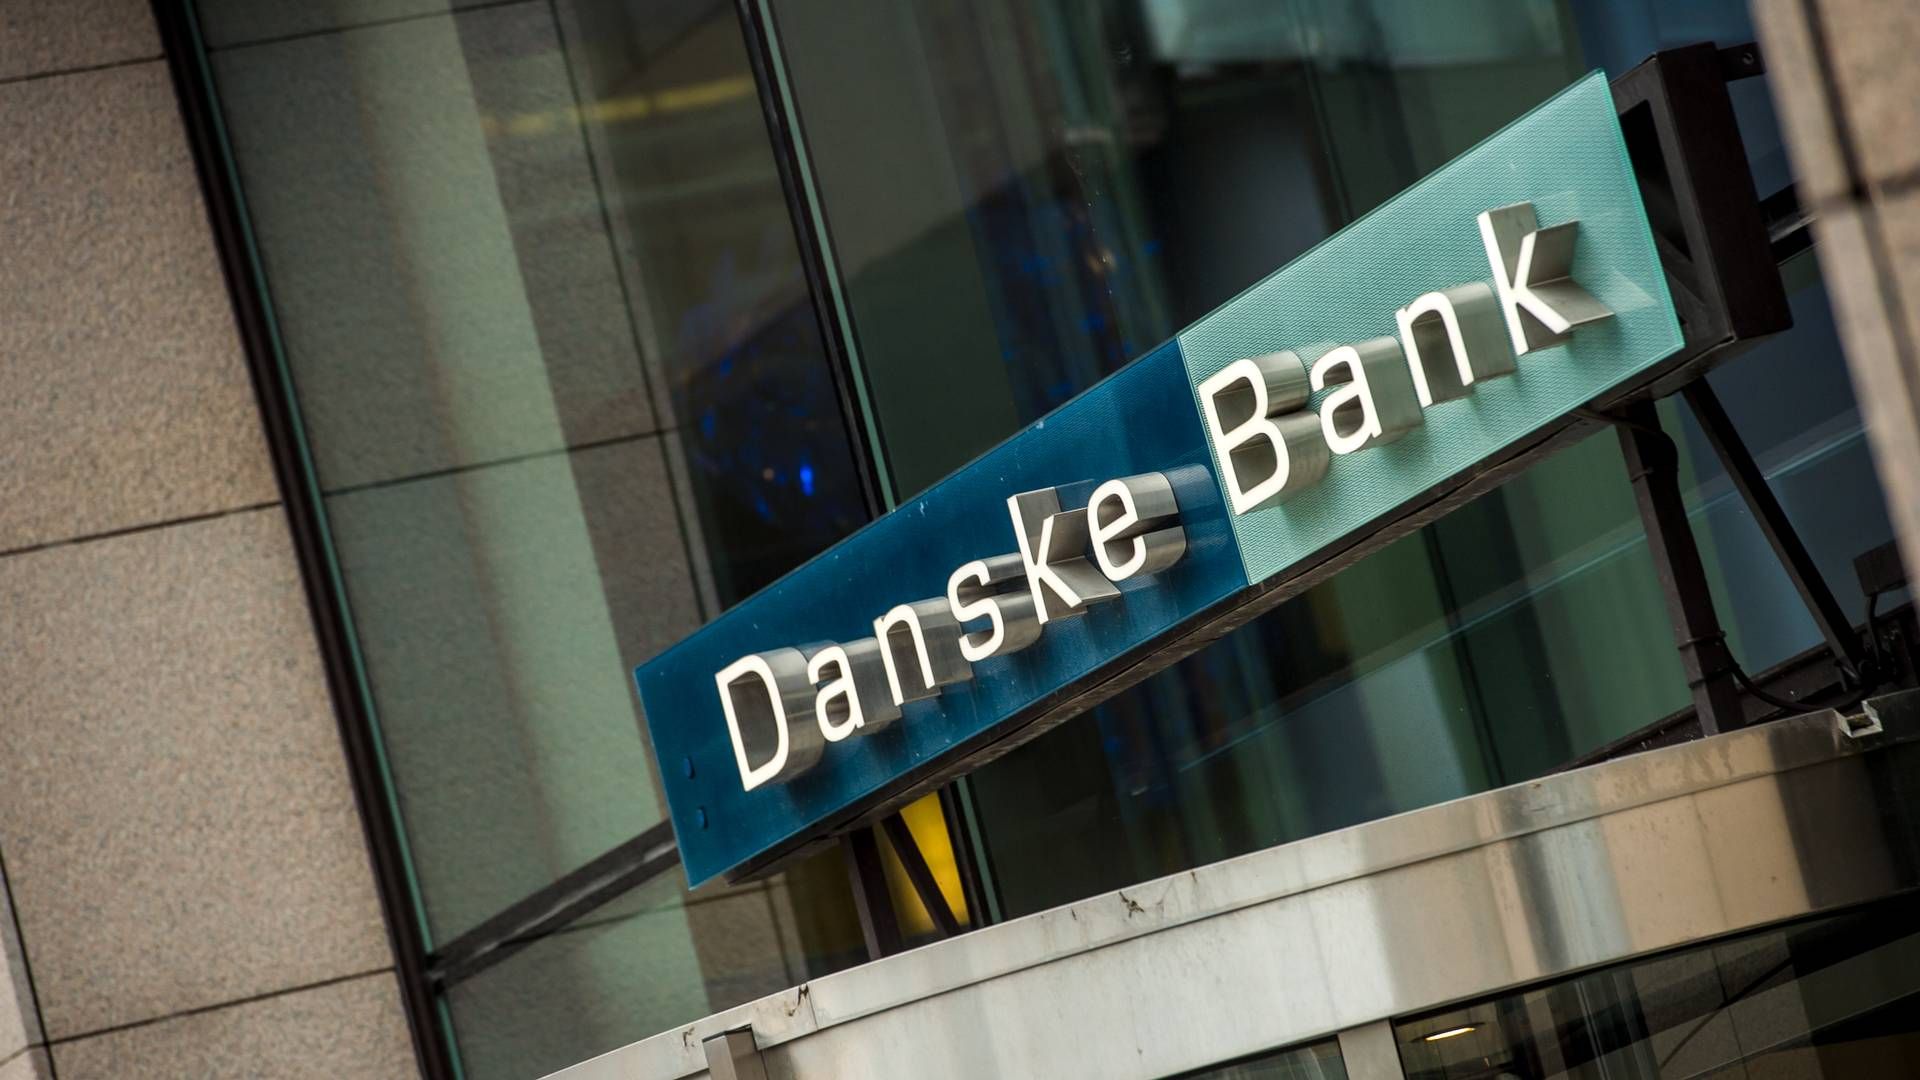 KOMPENSERES: I Høyesteretts domsavsigelse fremkommer det at Danske bank får dekket saksomkostninger på 17,2 millioner kroner av det fransk-italienske energiselskapet Edison International S.p.A. | Foto: Danske Bank